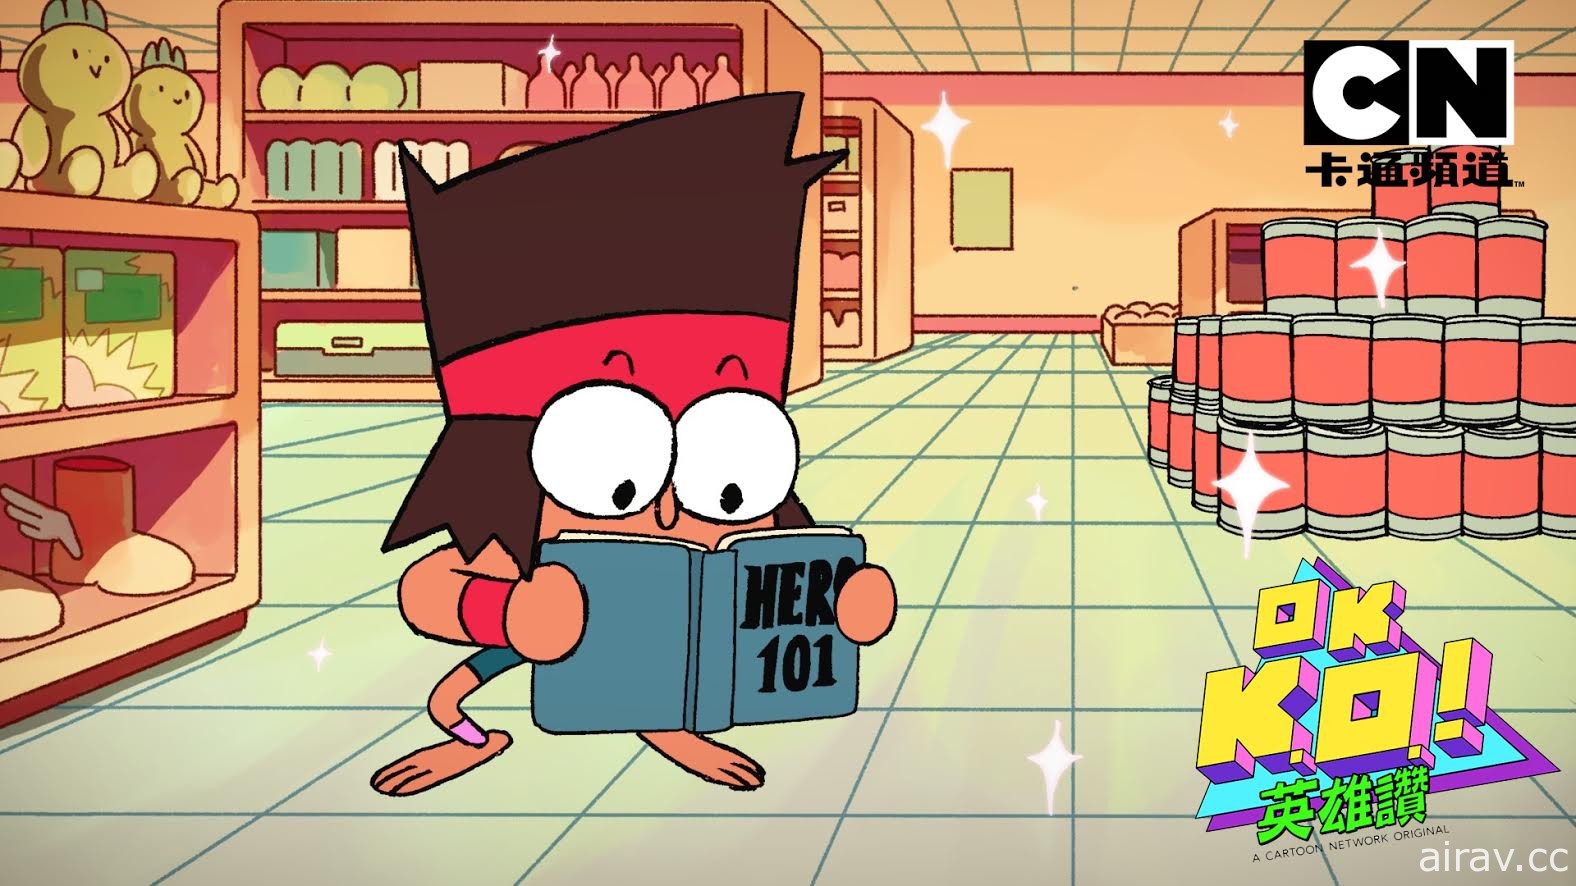 卡通頻道全新原創卡通《OK K.O.英雄讚》登場 每週六上午 10 點開播